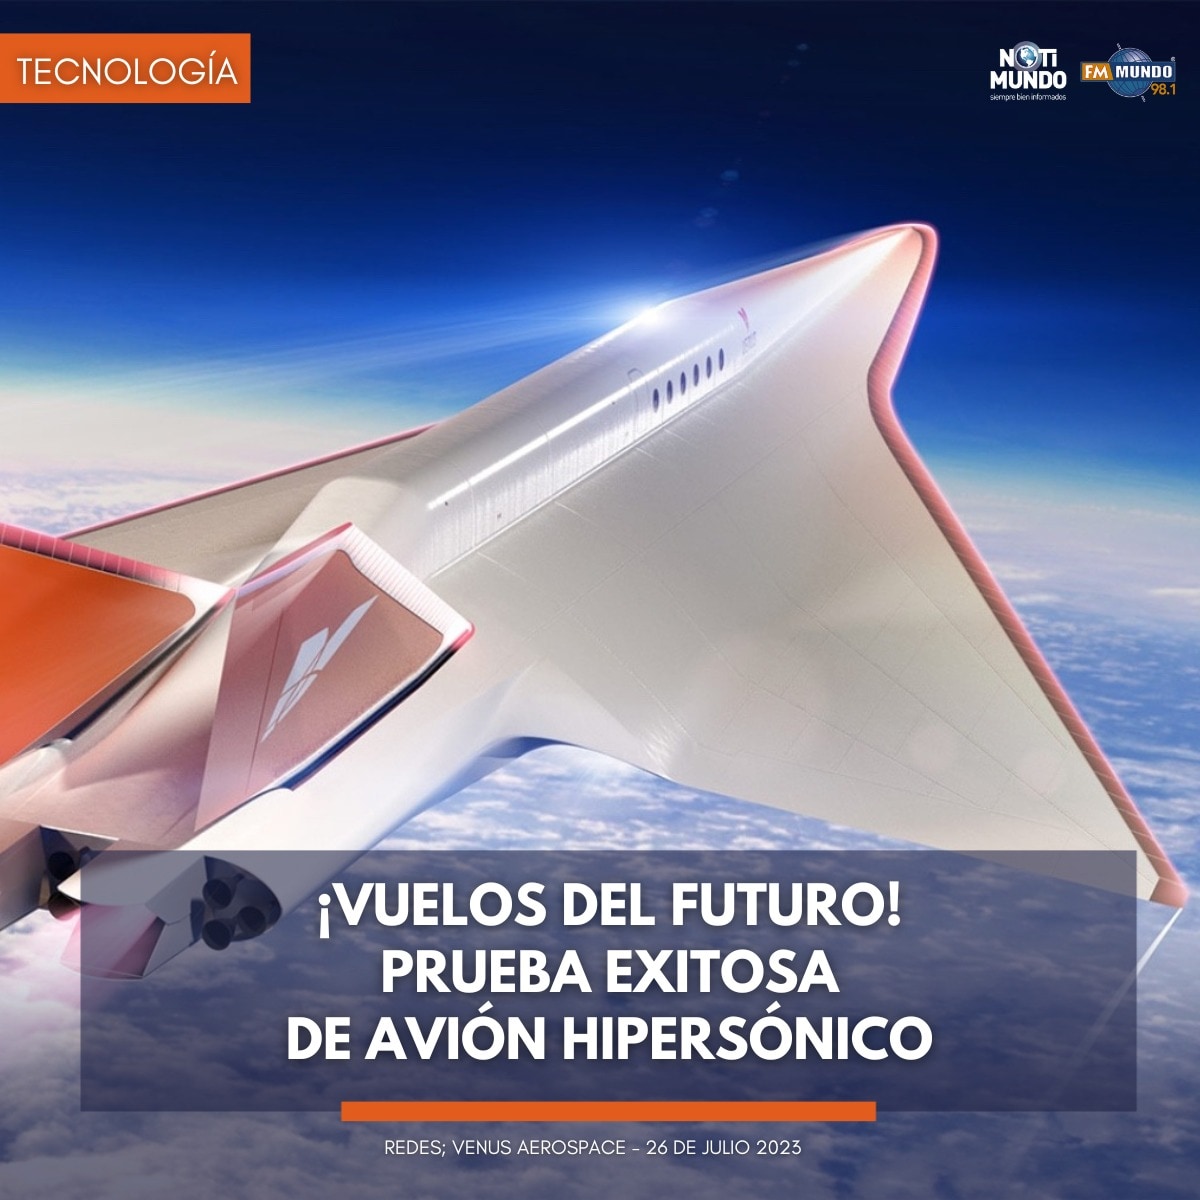 #VuelosDelFuturo ➡️ Venus Aerospace prueba motores de cohete para el avión Stargazer, que alcanzará más de 11.000 km/h, conectando Madrid-Los Ángeles en poco más de una hora. ¡El futuro de la aviación se ve brillante! ✈️🚀

Más información aquí: instagram.com/p/CvKkmqCgZF3/…